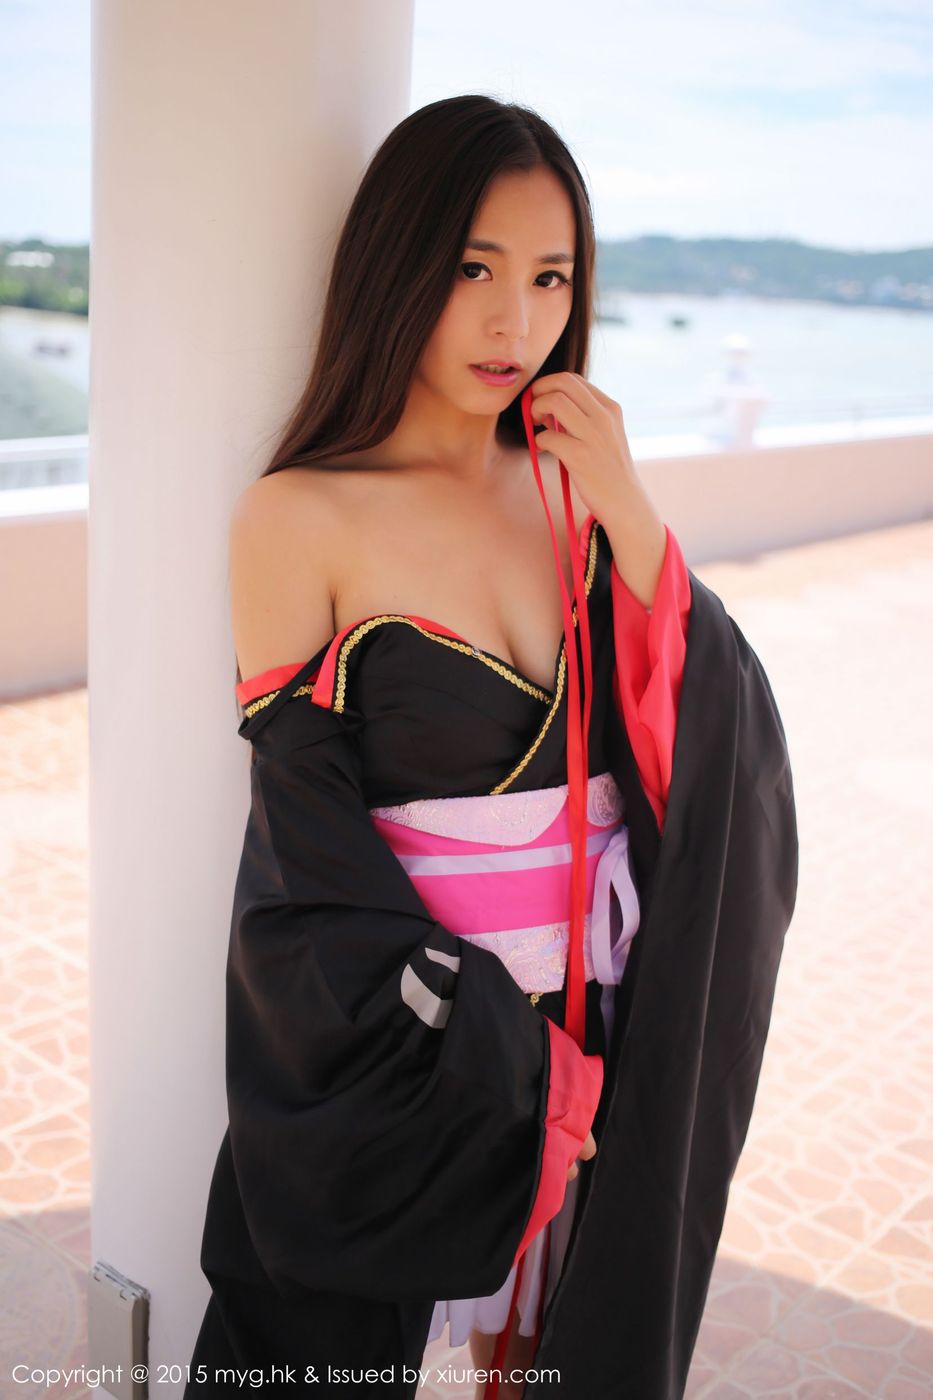 美媛馆美女模特Moa小姐沙滩和服主题菲律宾长滩诱惑旅拍